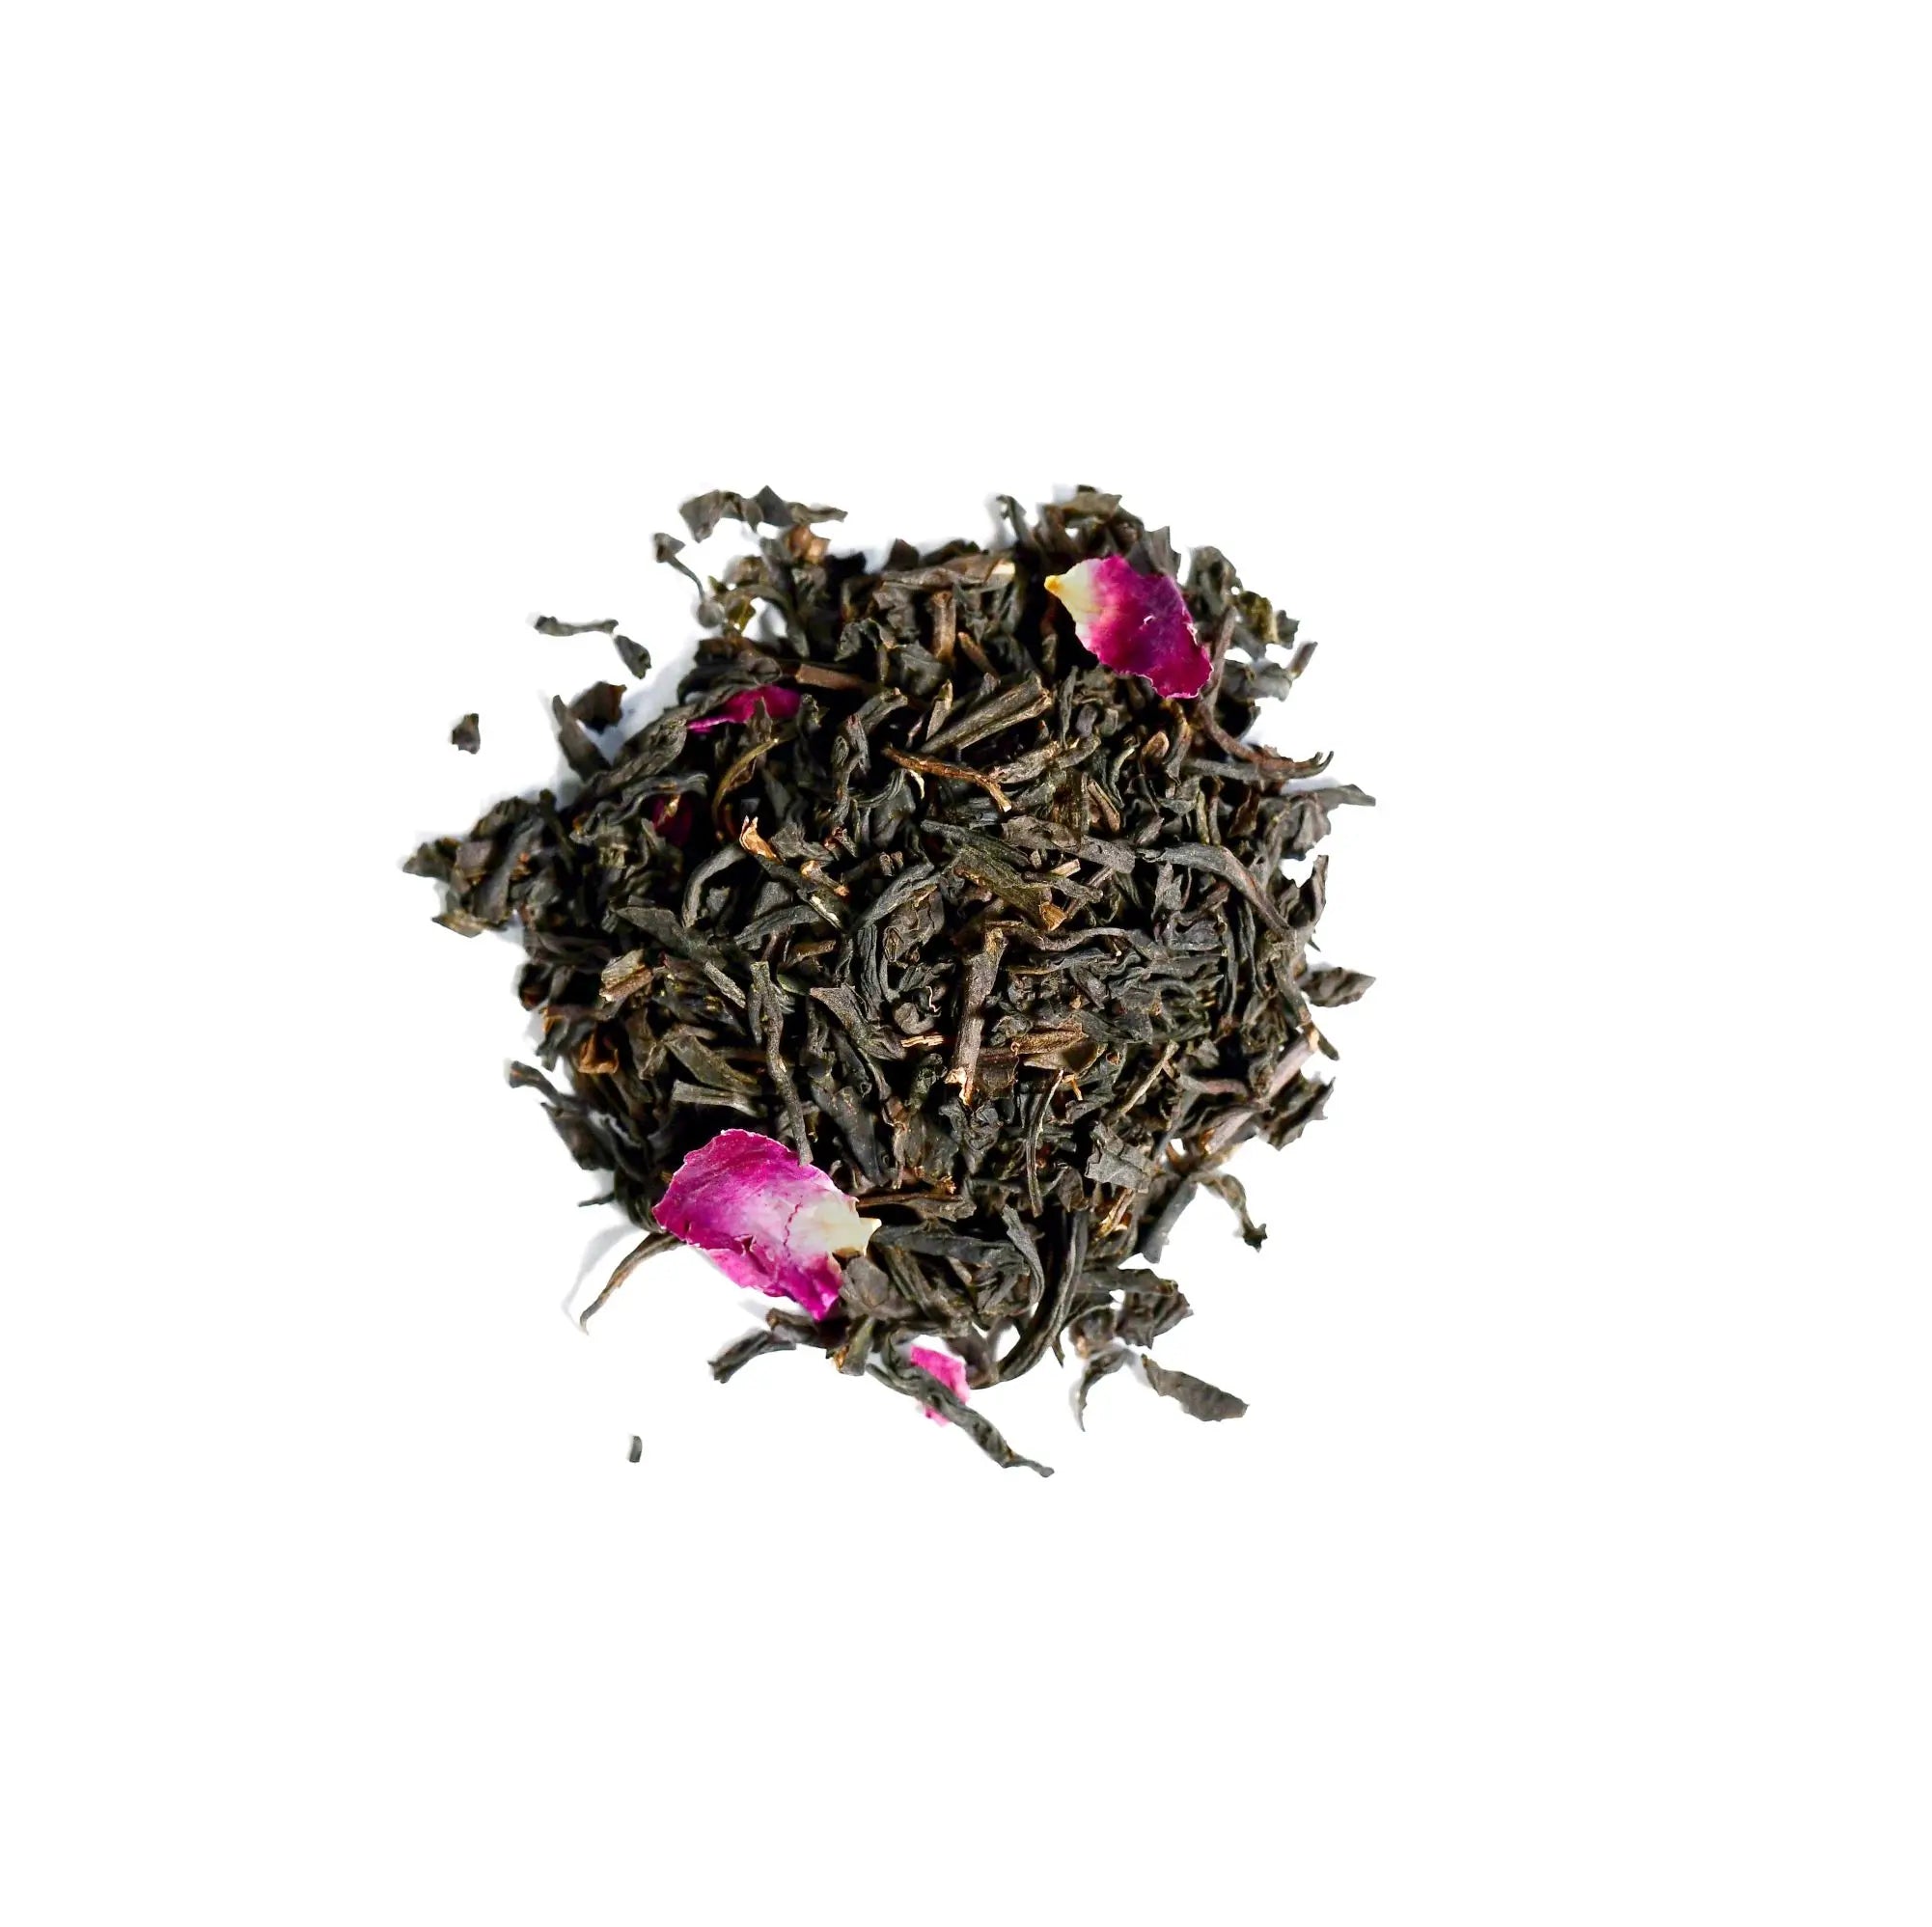 Rose Congou Craft Tea